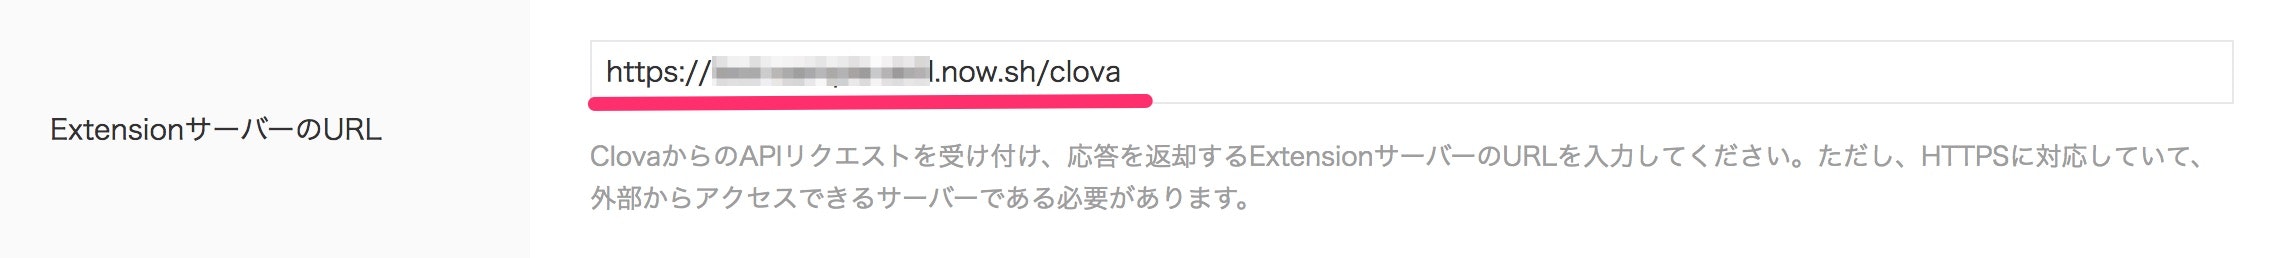 Clova_Developer_Center_β.jpg